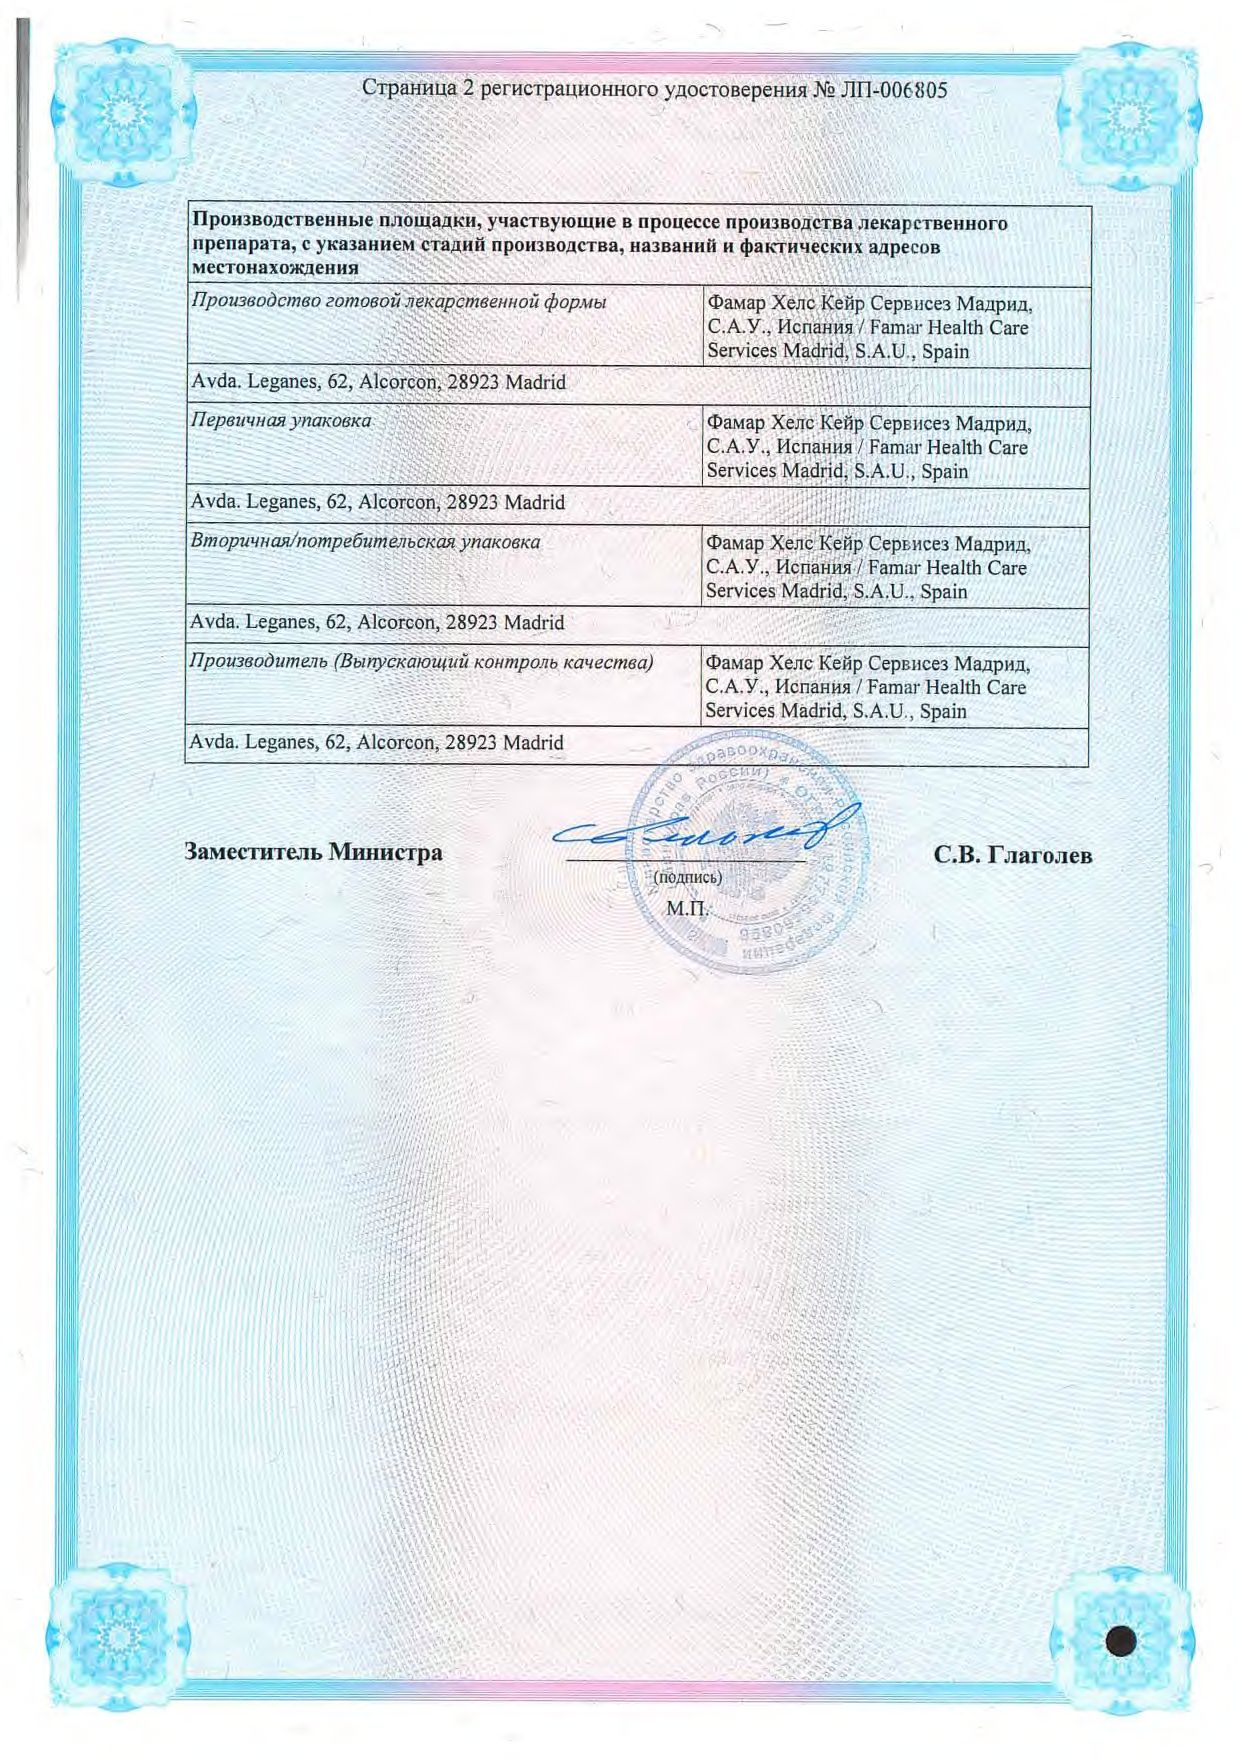 Тизин Пантенол сертификат